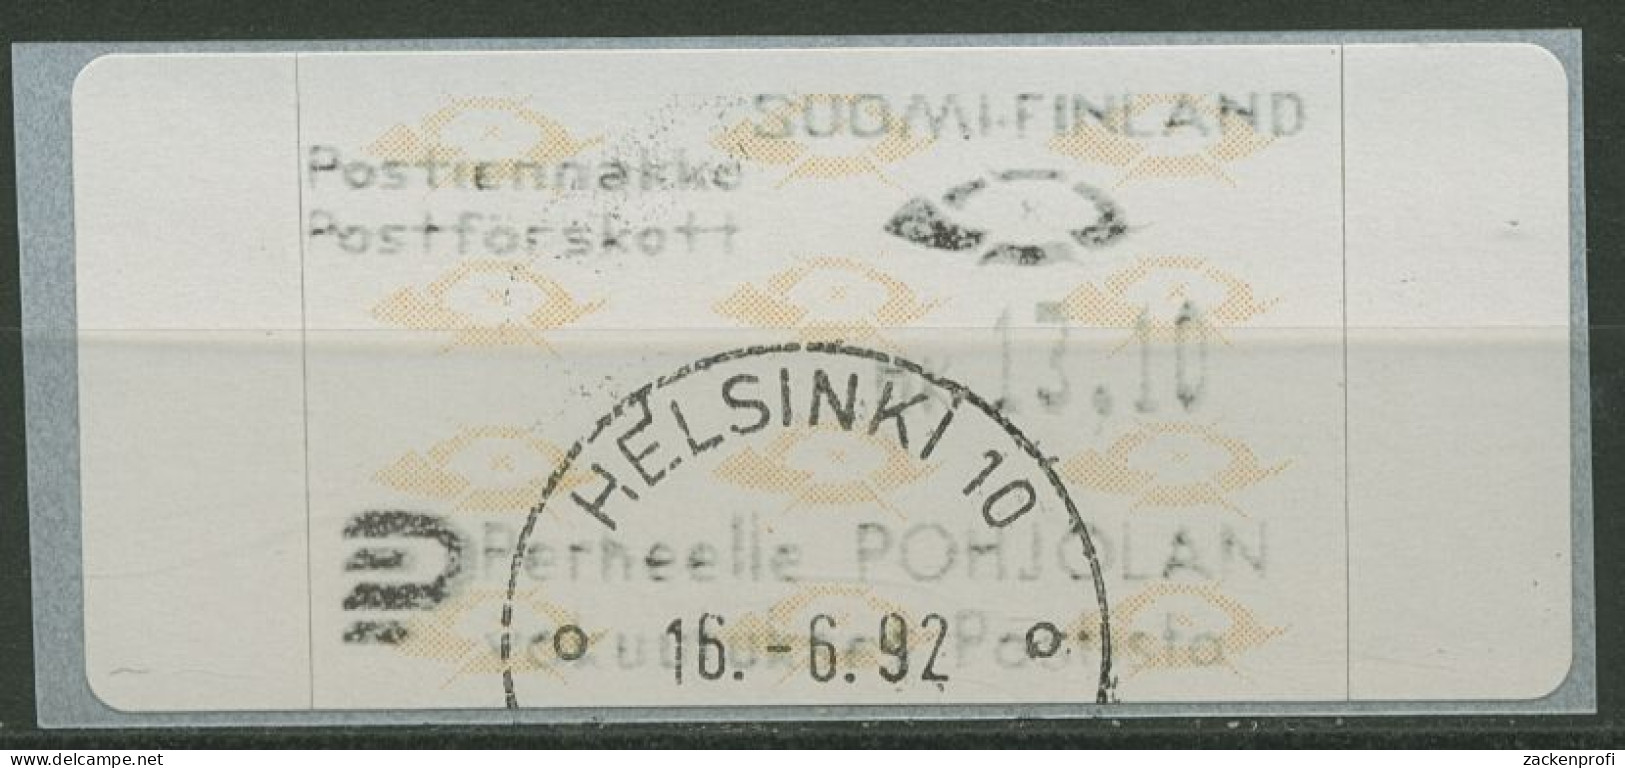 Finnland Automatenmarken 1992 Posthörner Einzelwert ATM 12.3 Z5 Gestempelt - Machine Labels [ATM]